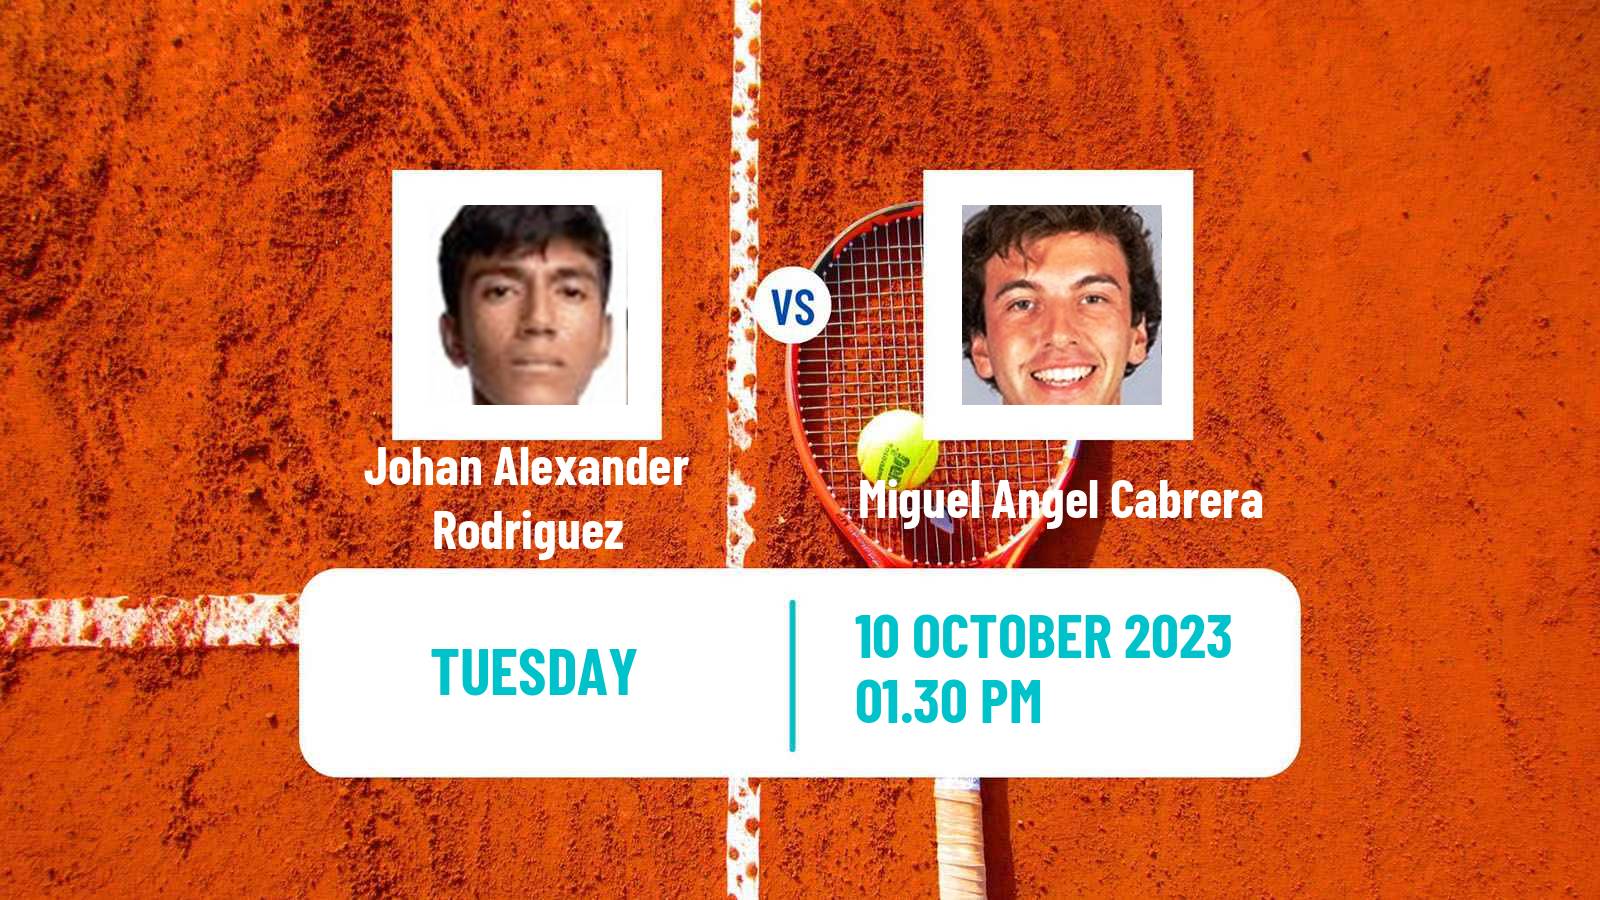 Tennis ITF M25 Zapopan Men Johan Alexander Rodriguez - Miguel Angel Cabrera